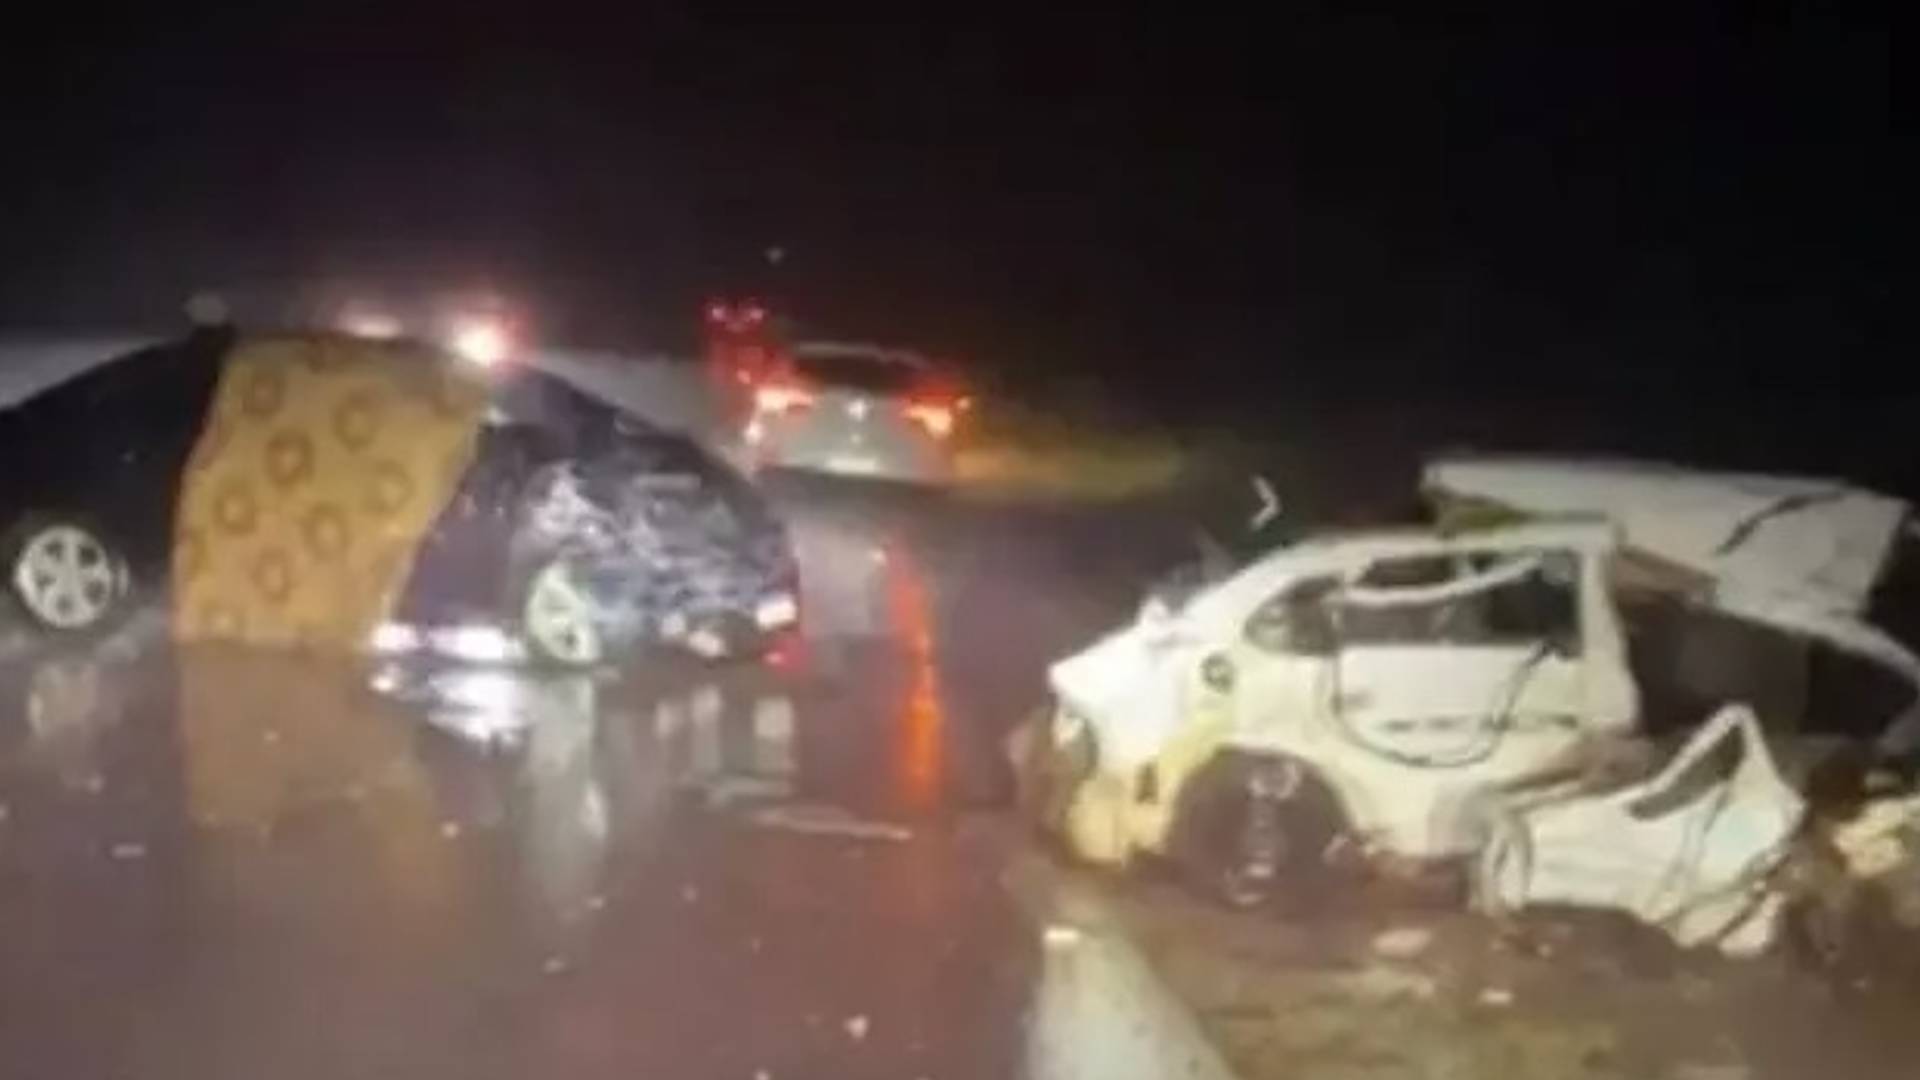 Chuva forte: motorista perde controle e dois morrem na MS-164 após batida entre carros